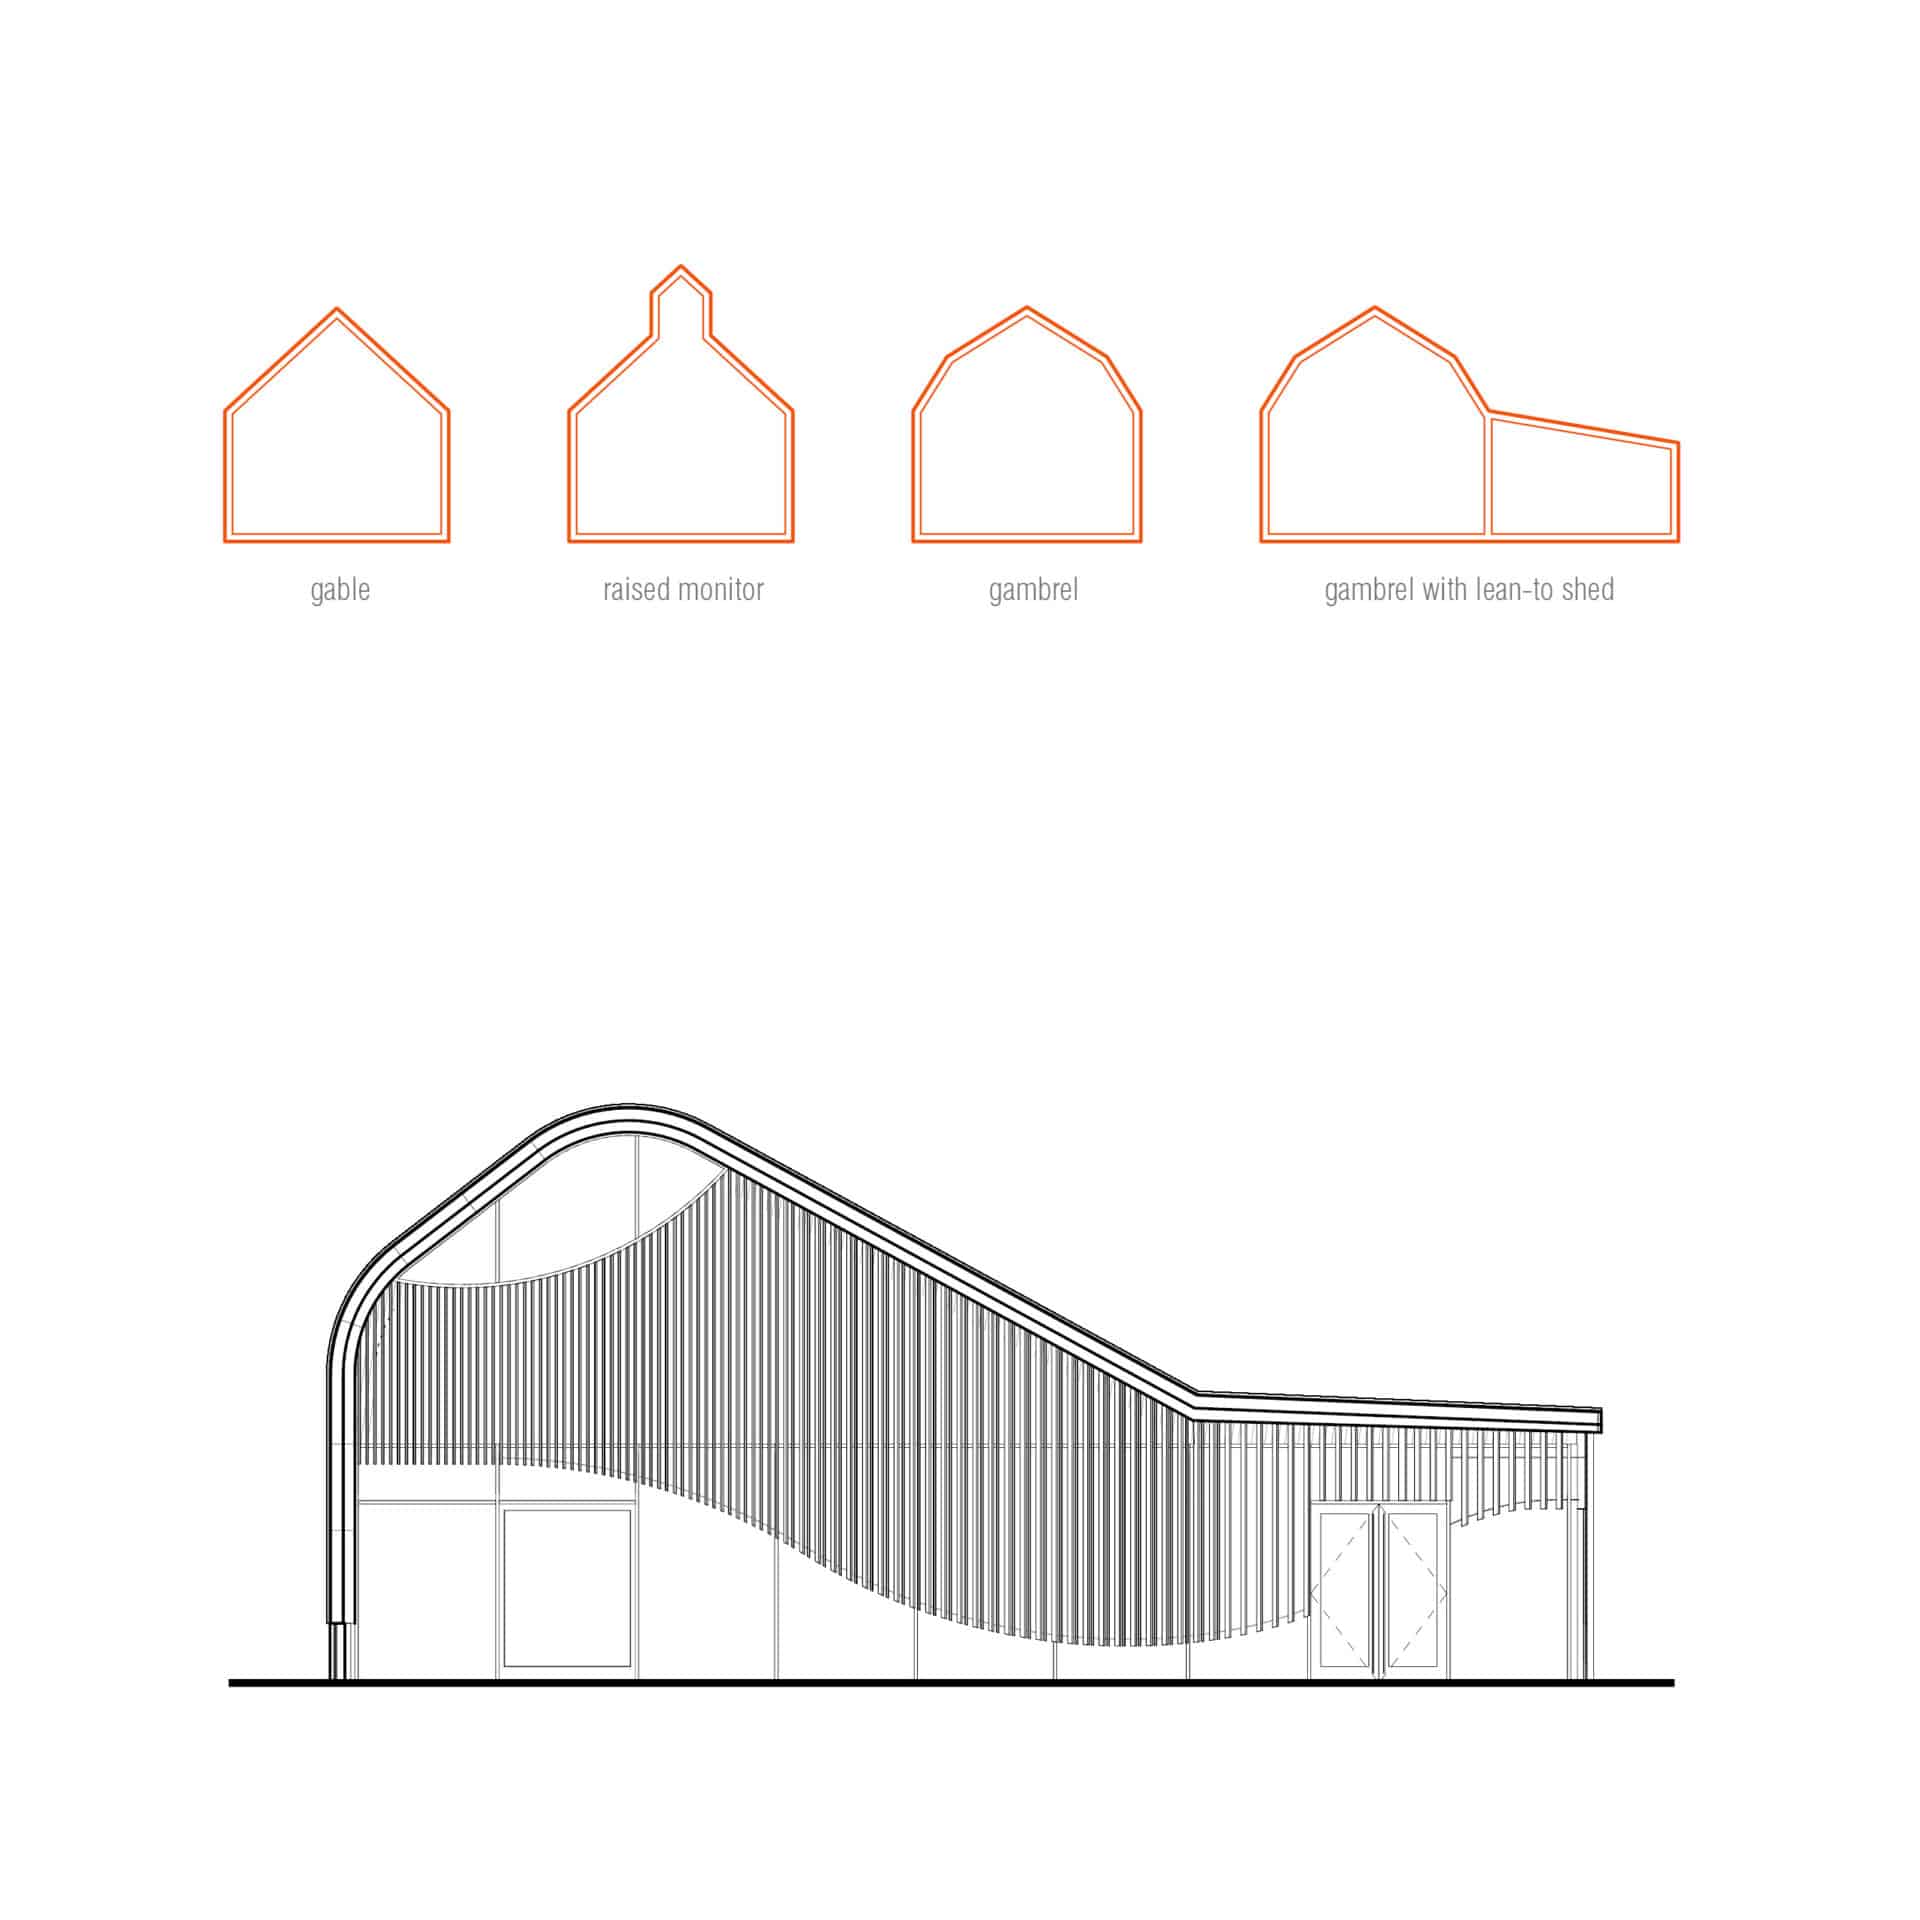 design plans for laumeier fine arts center by trivers